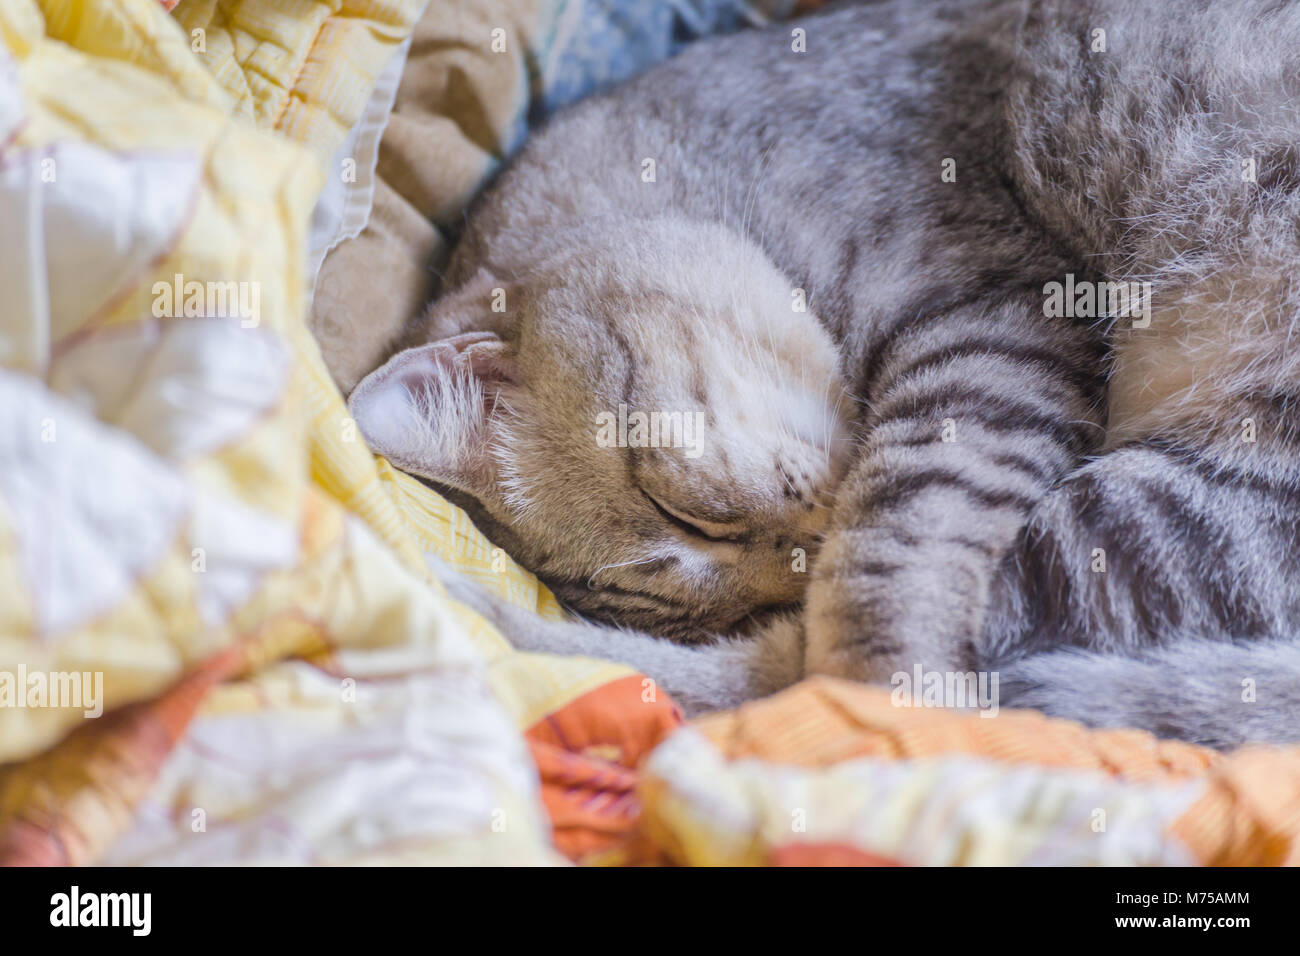 American Shorthair gato durmiendo en la manta en la mañana del domingo, el enfoque selectivo, vintage y estilo de película fotográfica. Foto de stock